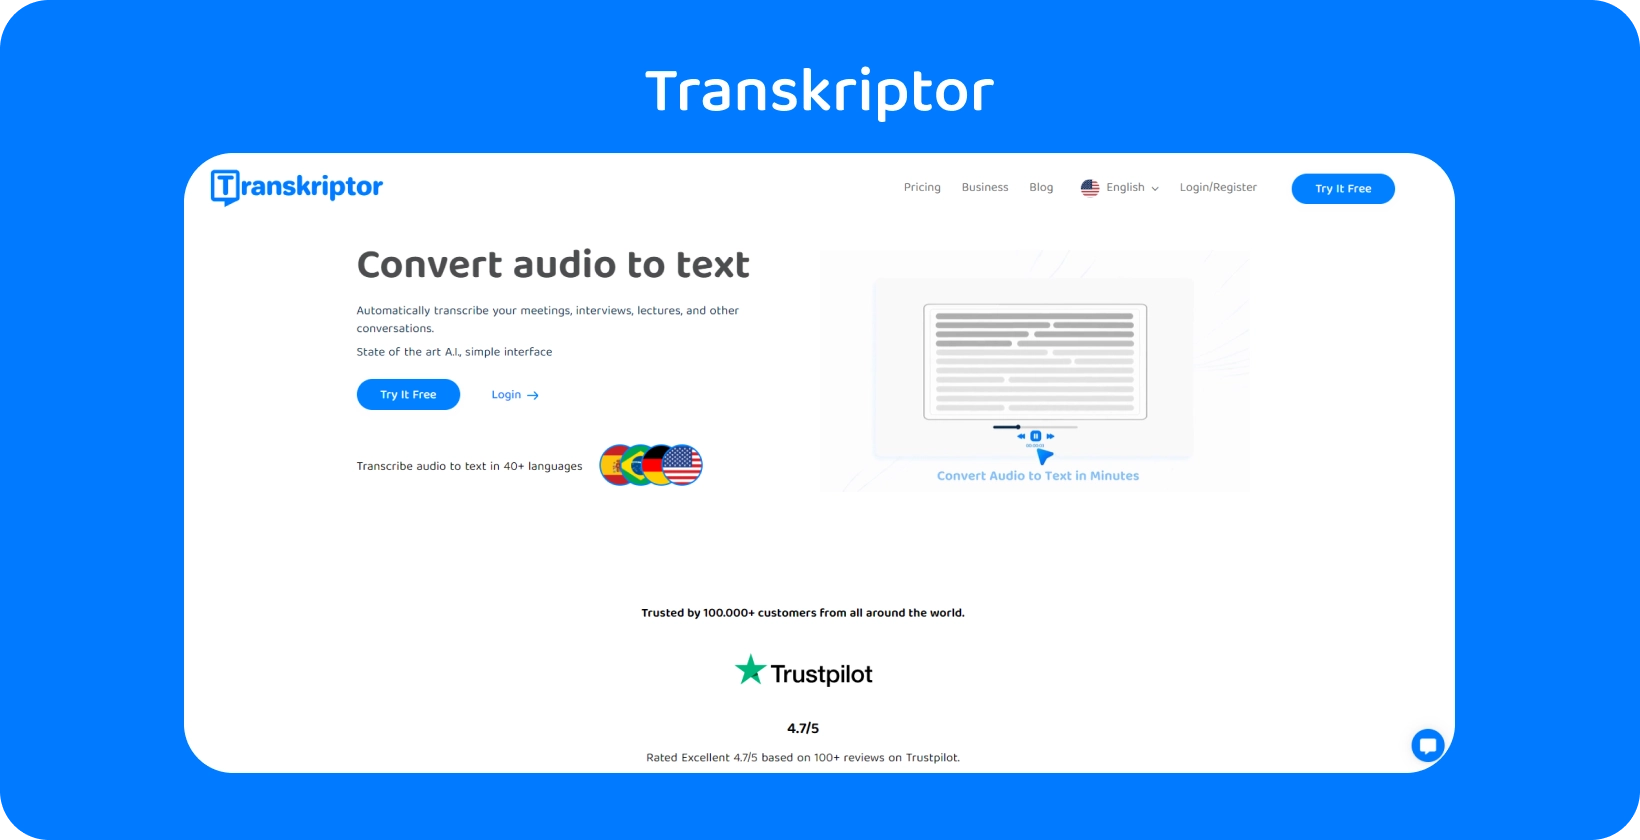 Interfața Transkriptor prezintă caracteristica asistentului de întâlnire, simplificând transcrierea calitativă a cercetării.